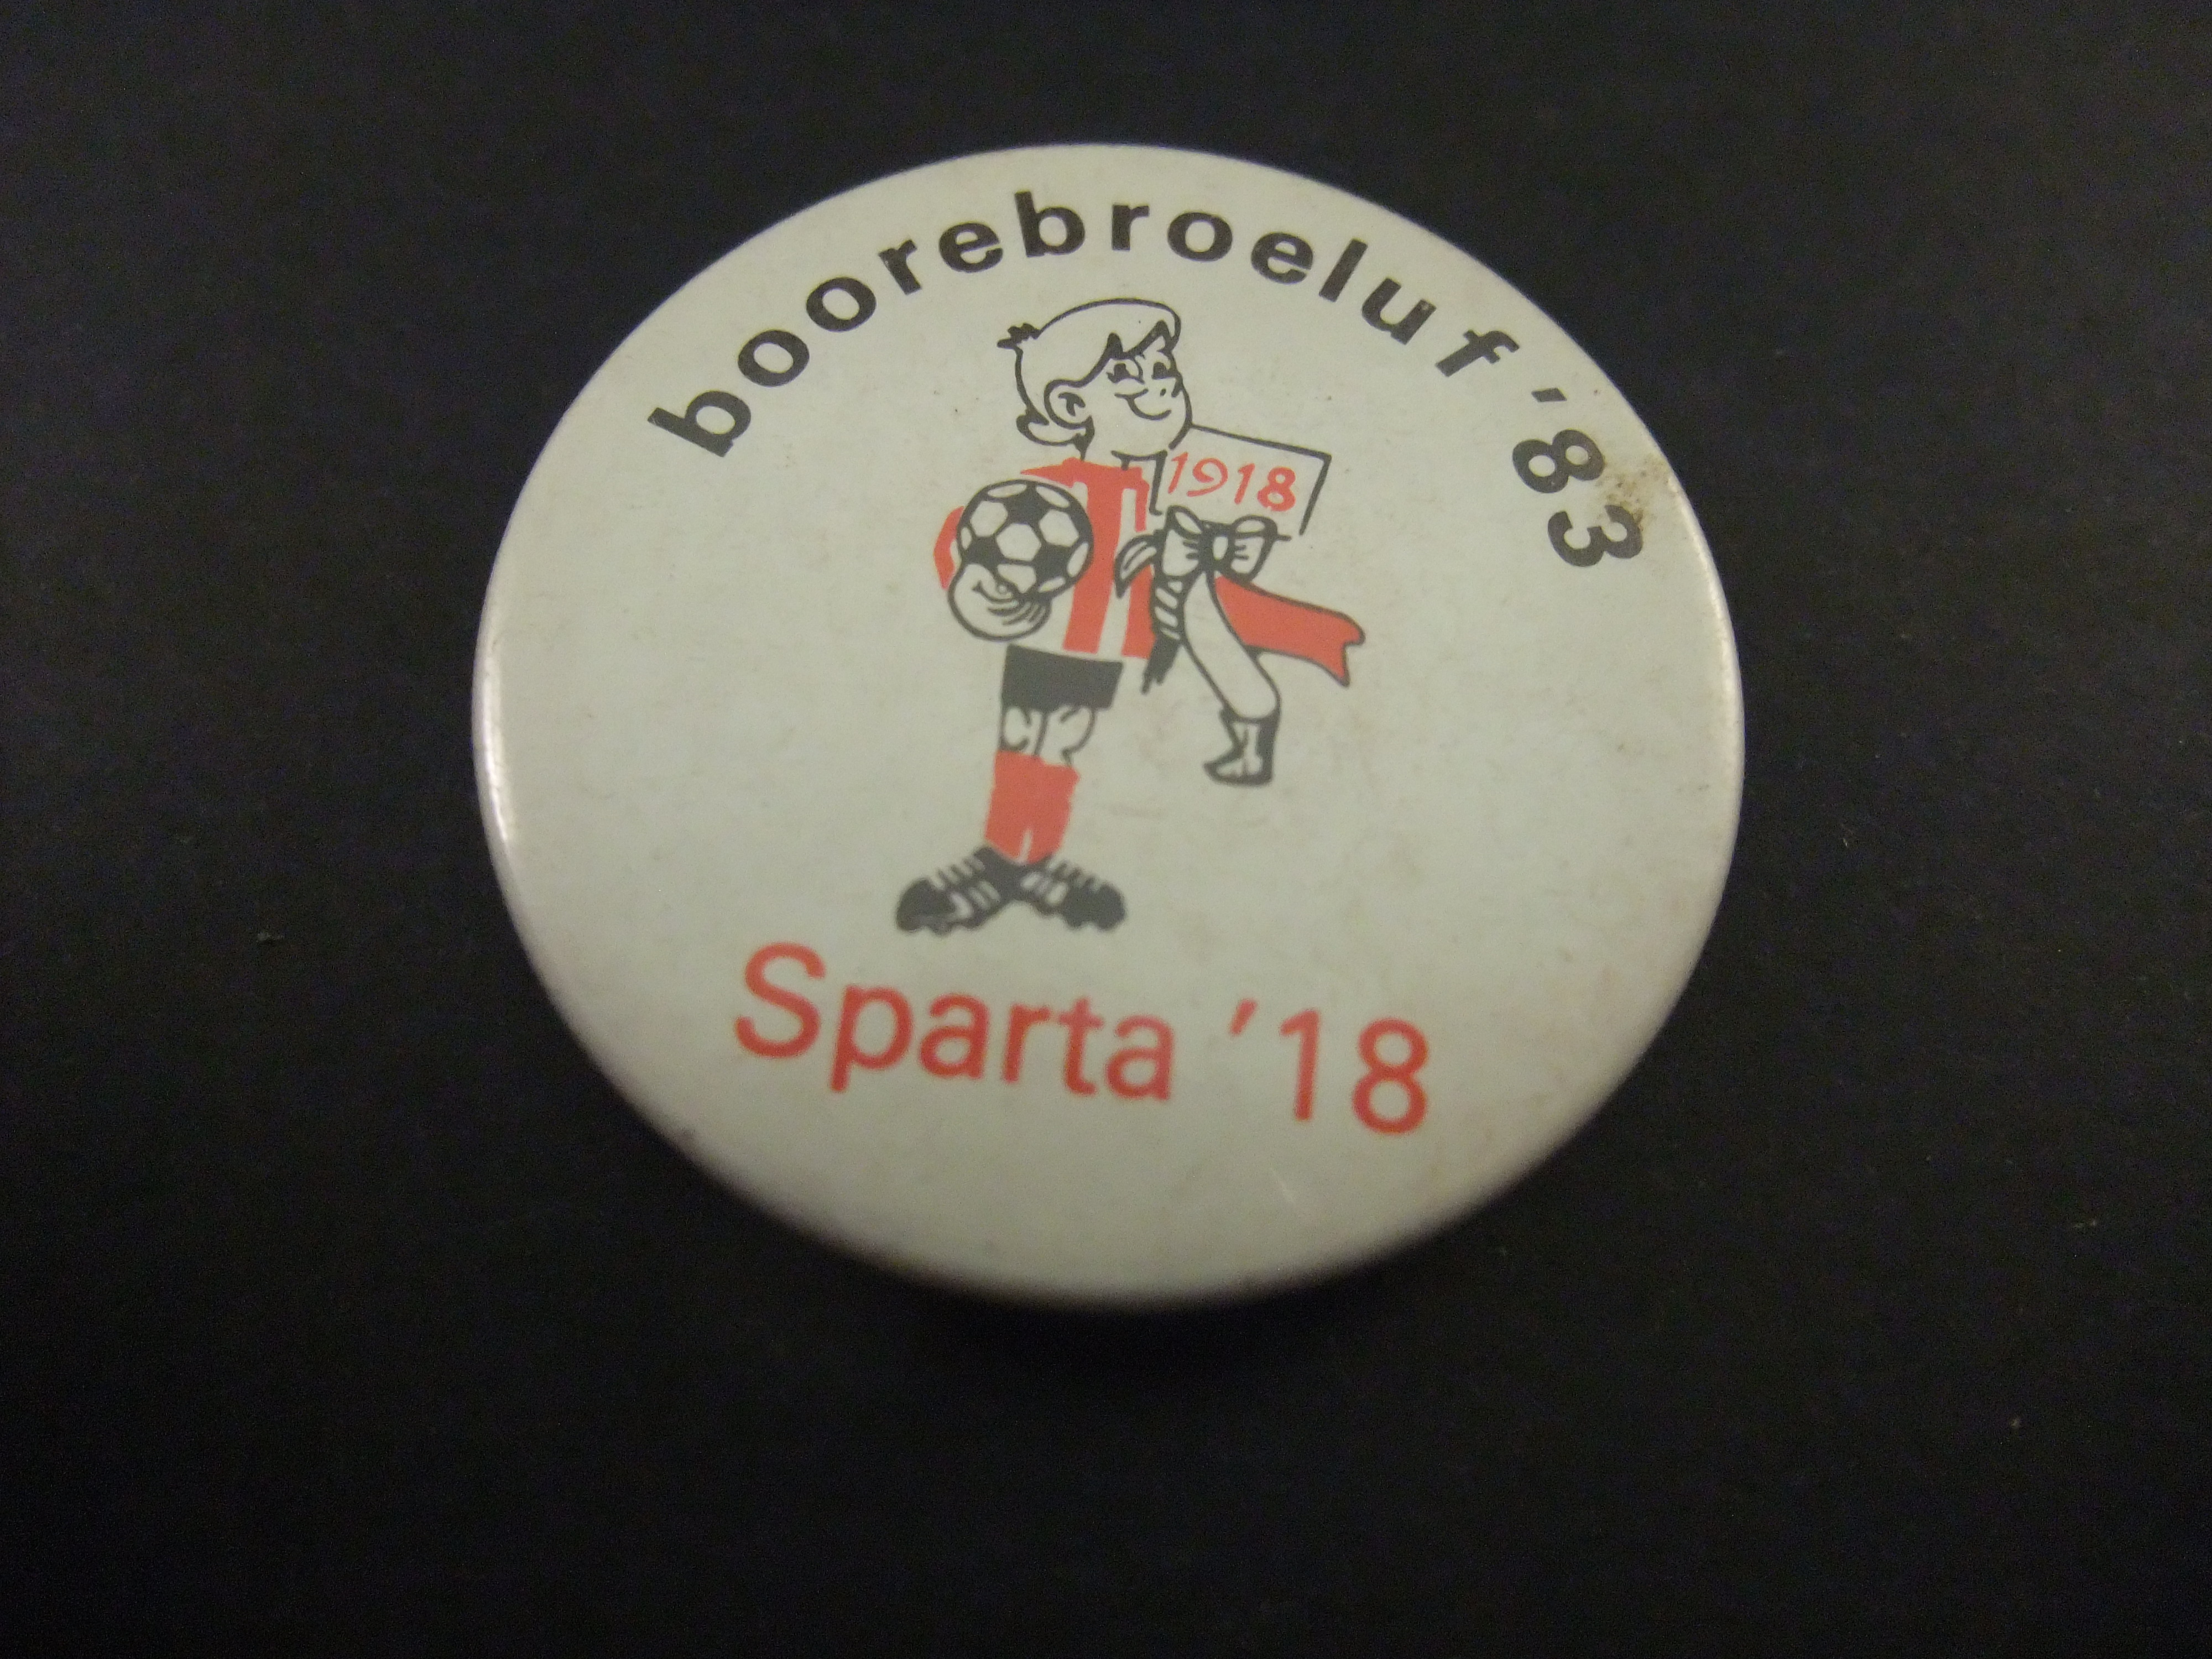 Boorebroelof voetbalclub Sparta 1983